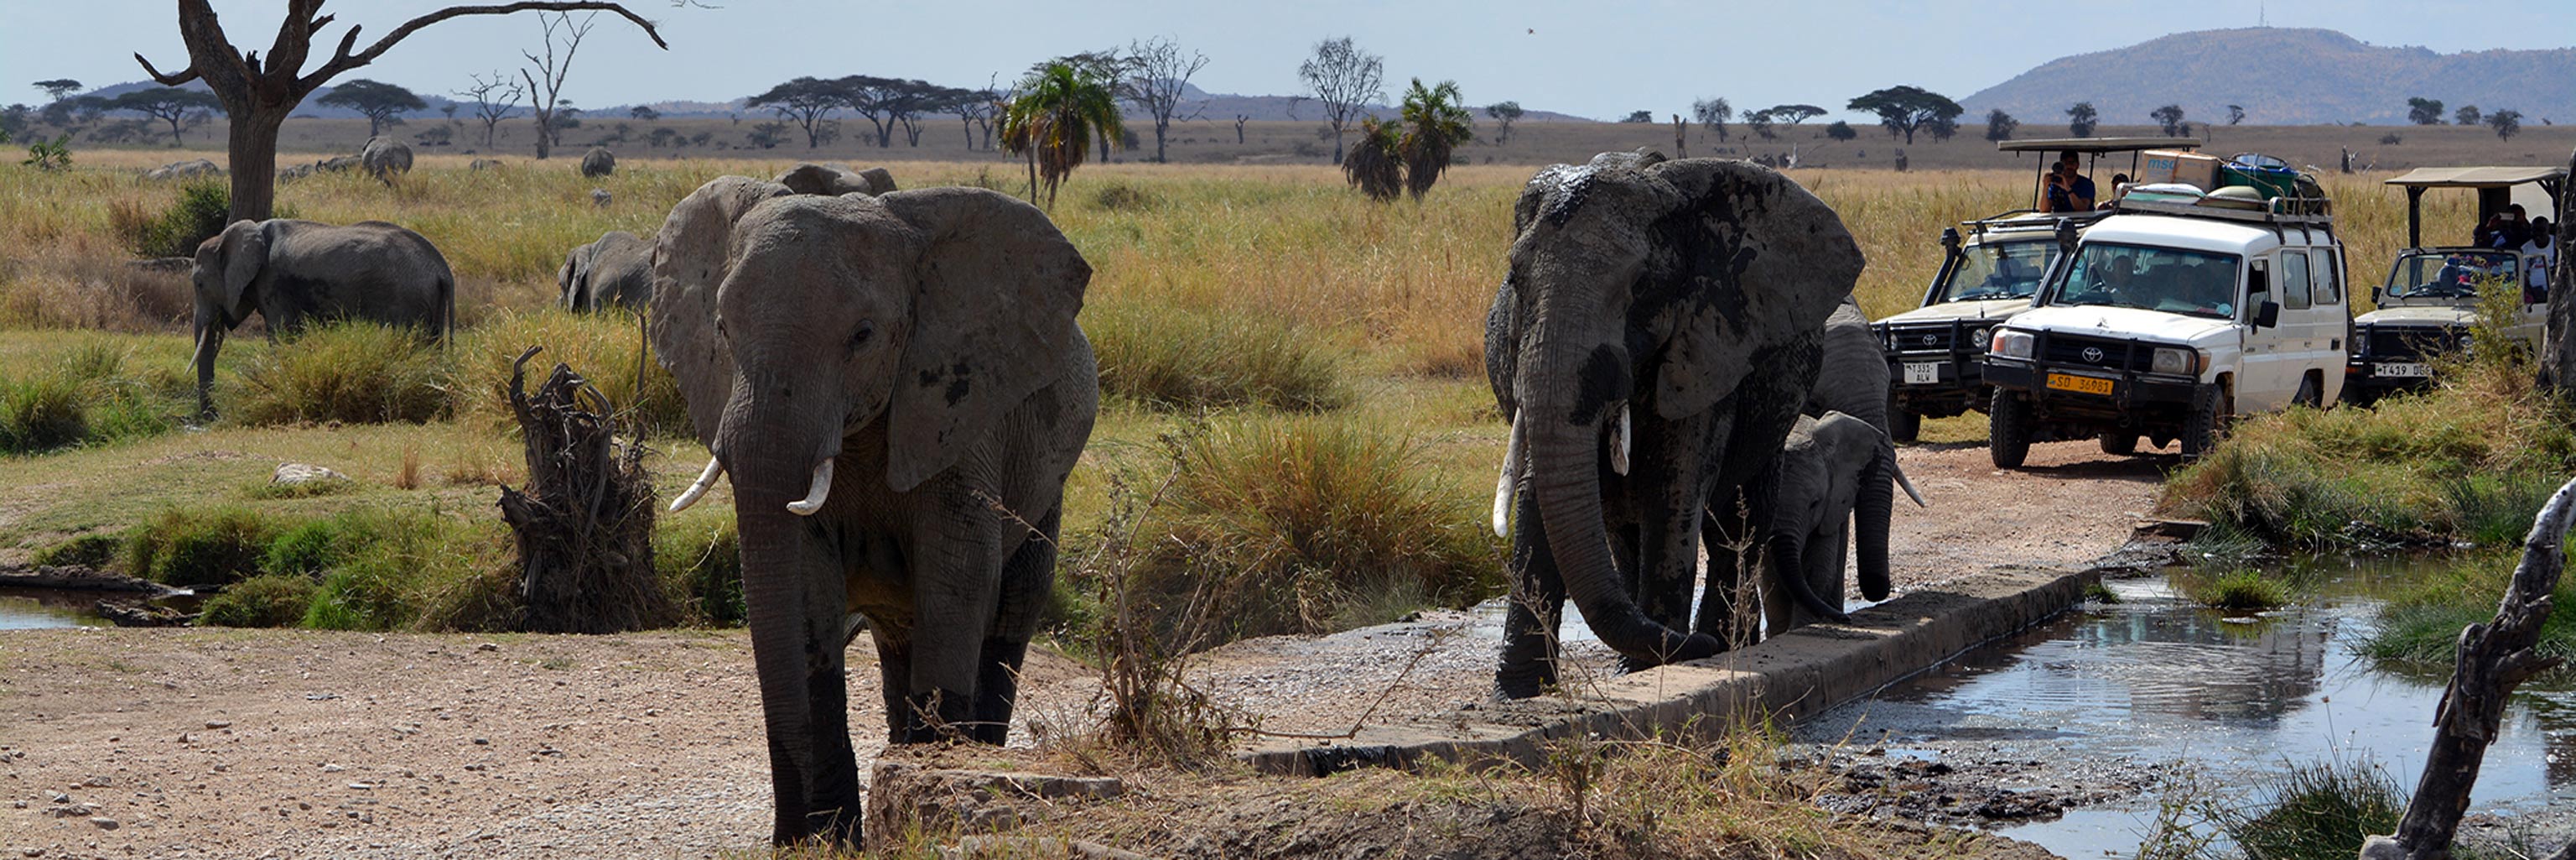 Caravan of researchers following elephants